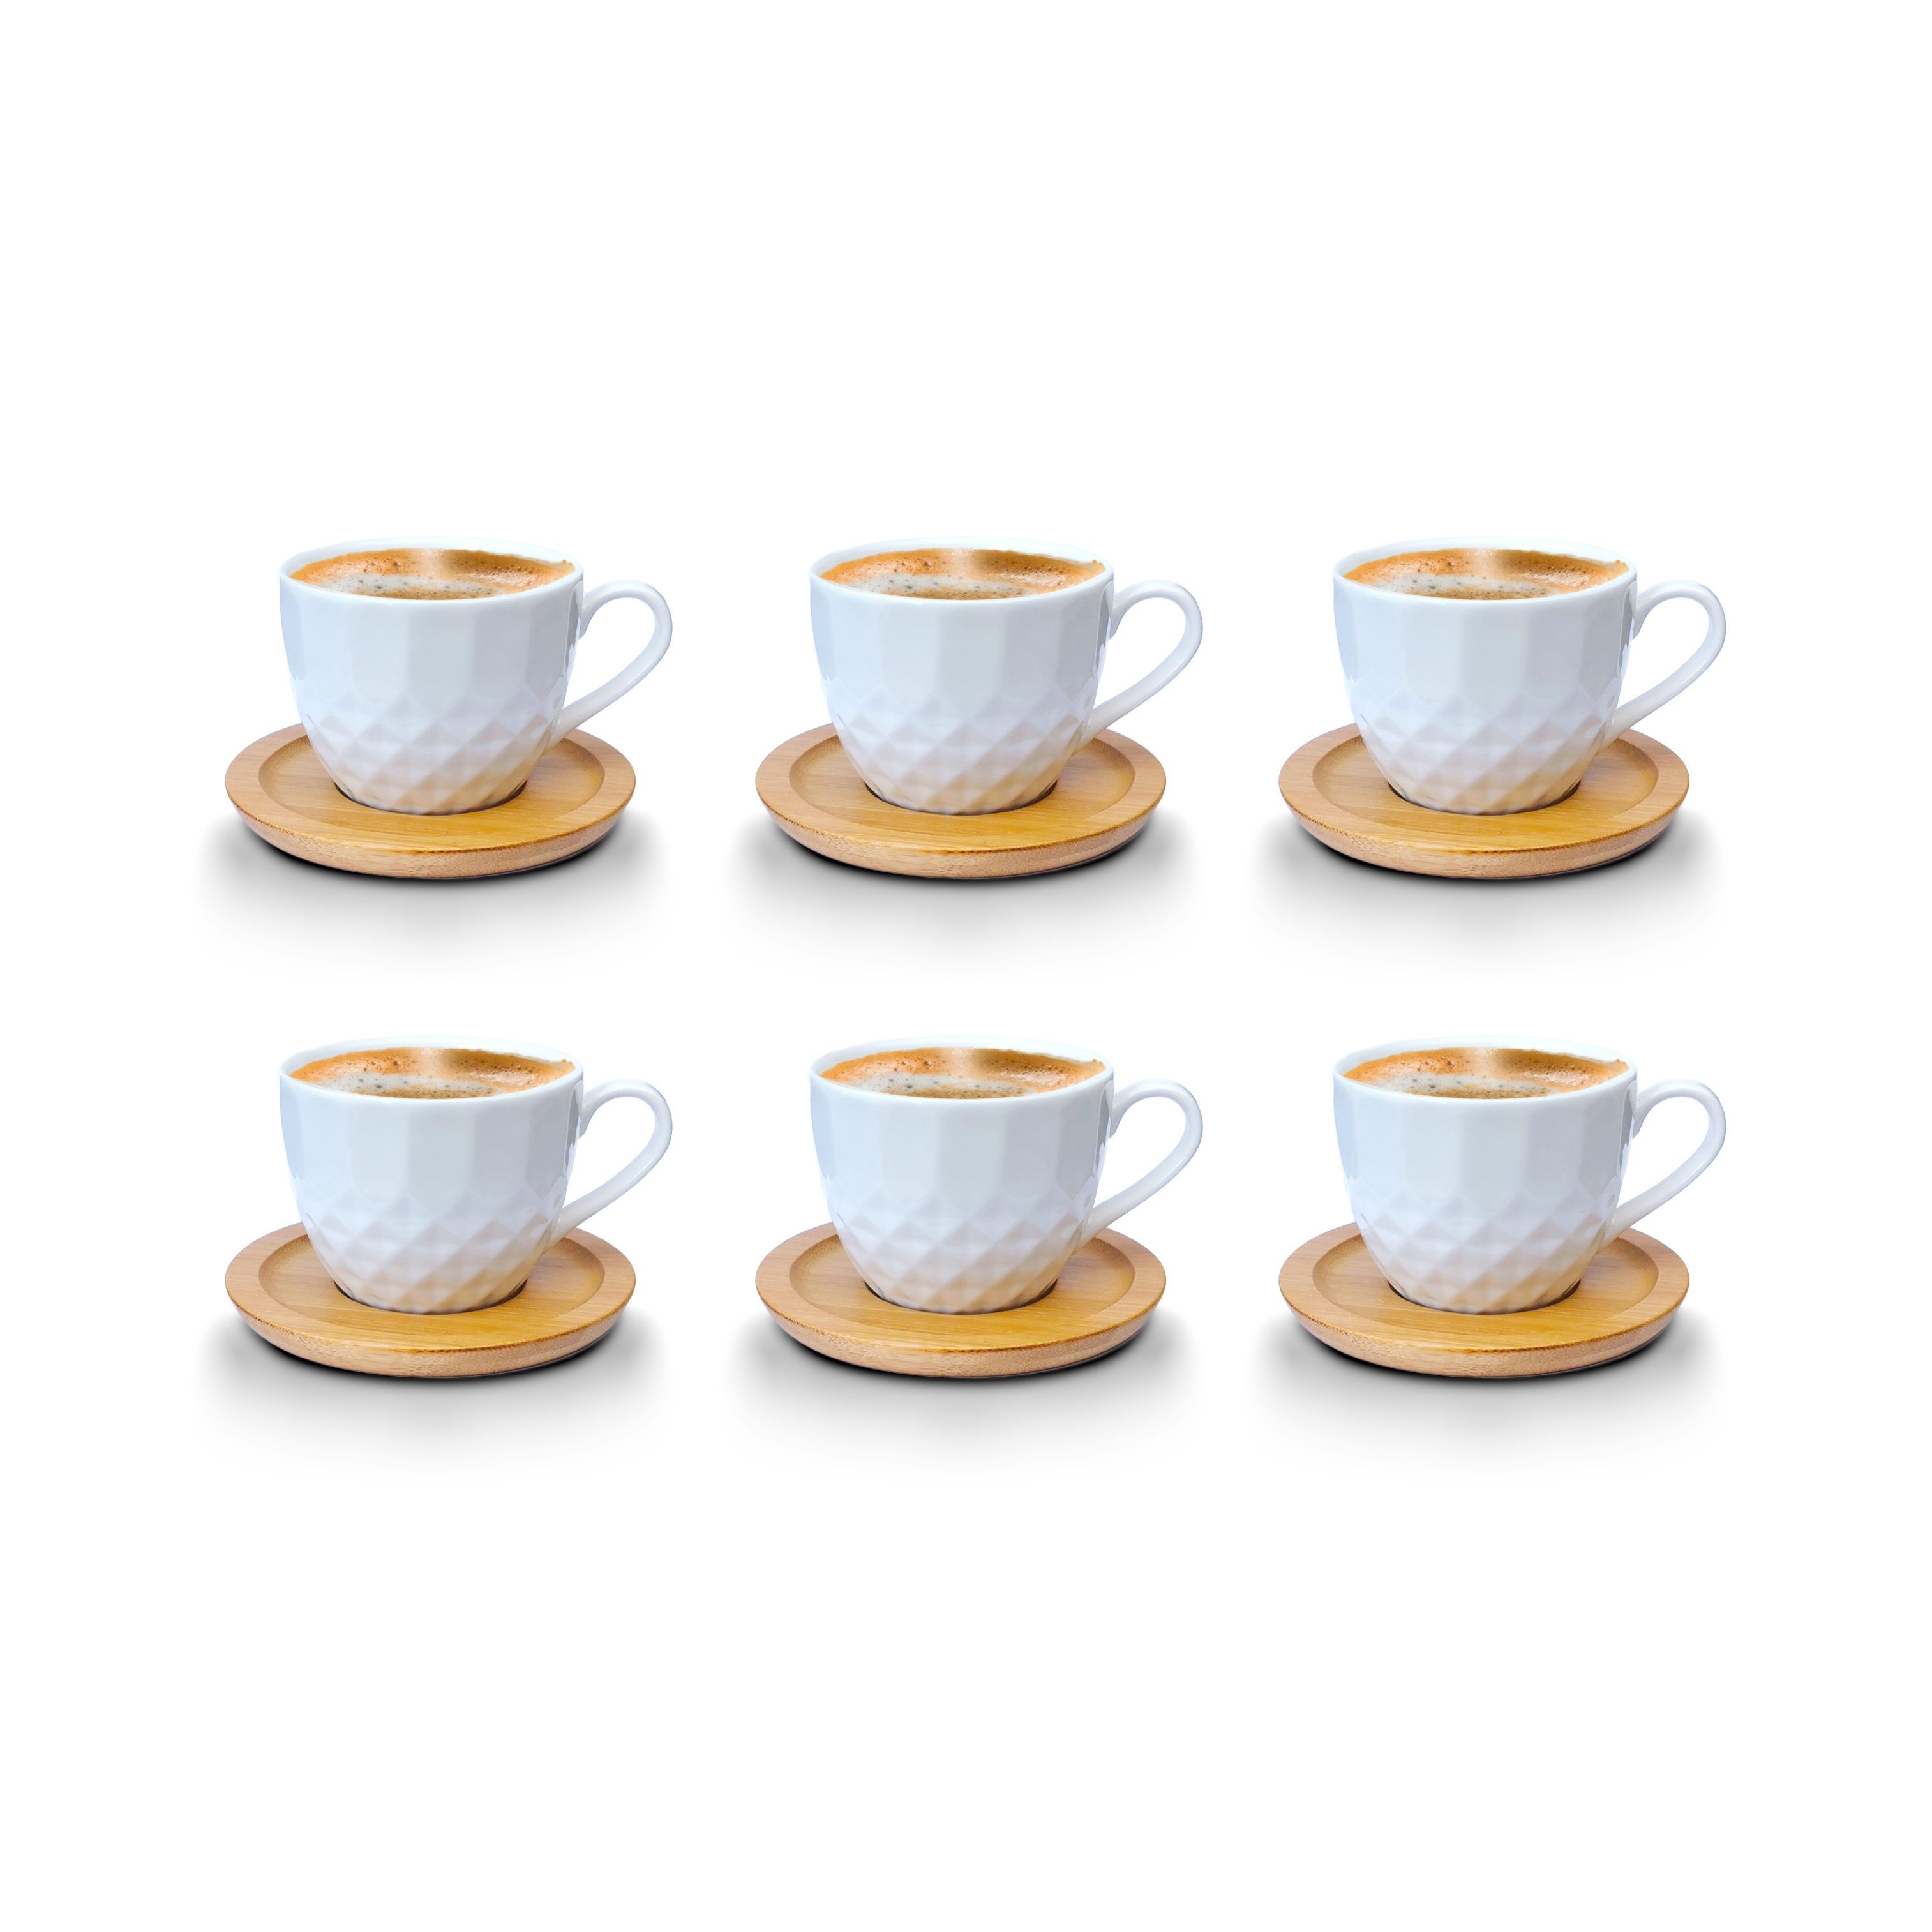 Melody Tasse Porzellan Espressotassen, Kaffeeservice Set Untertassen 6er-Set, Teeservice Porzellan, mit Untertassen mit Tassen Mod3 12-Teilig